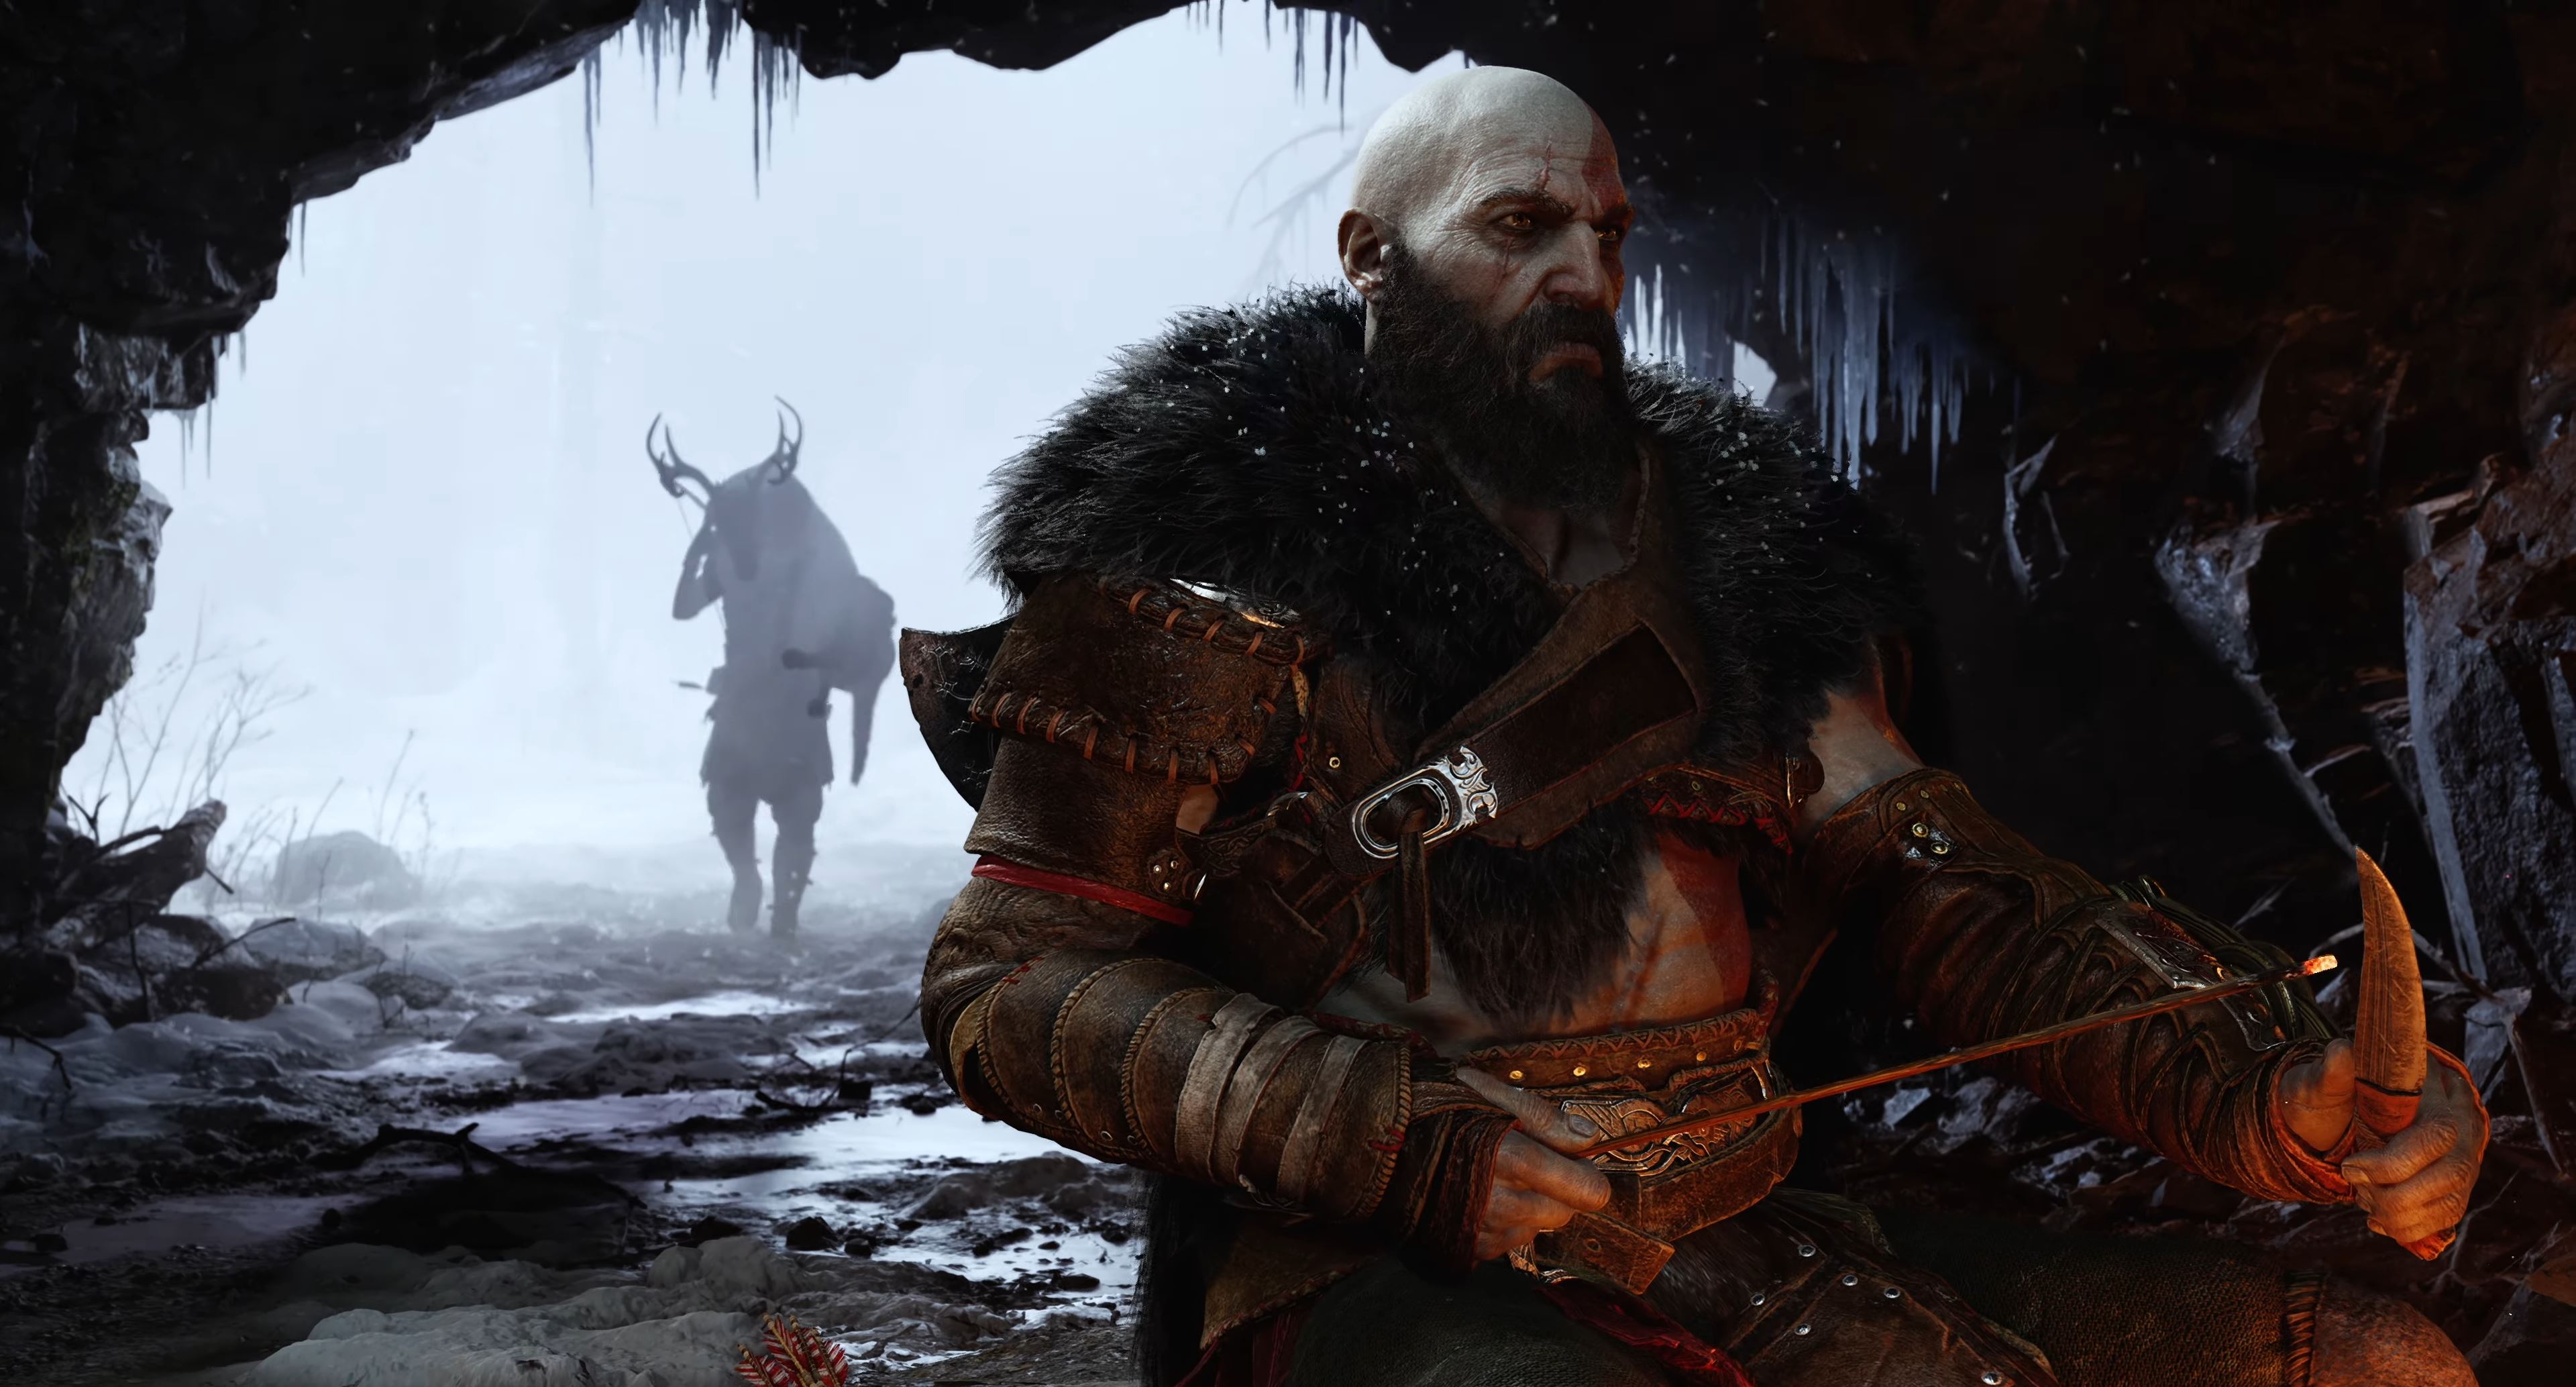 2021 Preview: God of War: Ragnarök teases an epic Norse battle